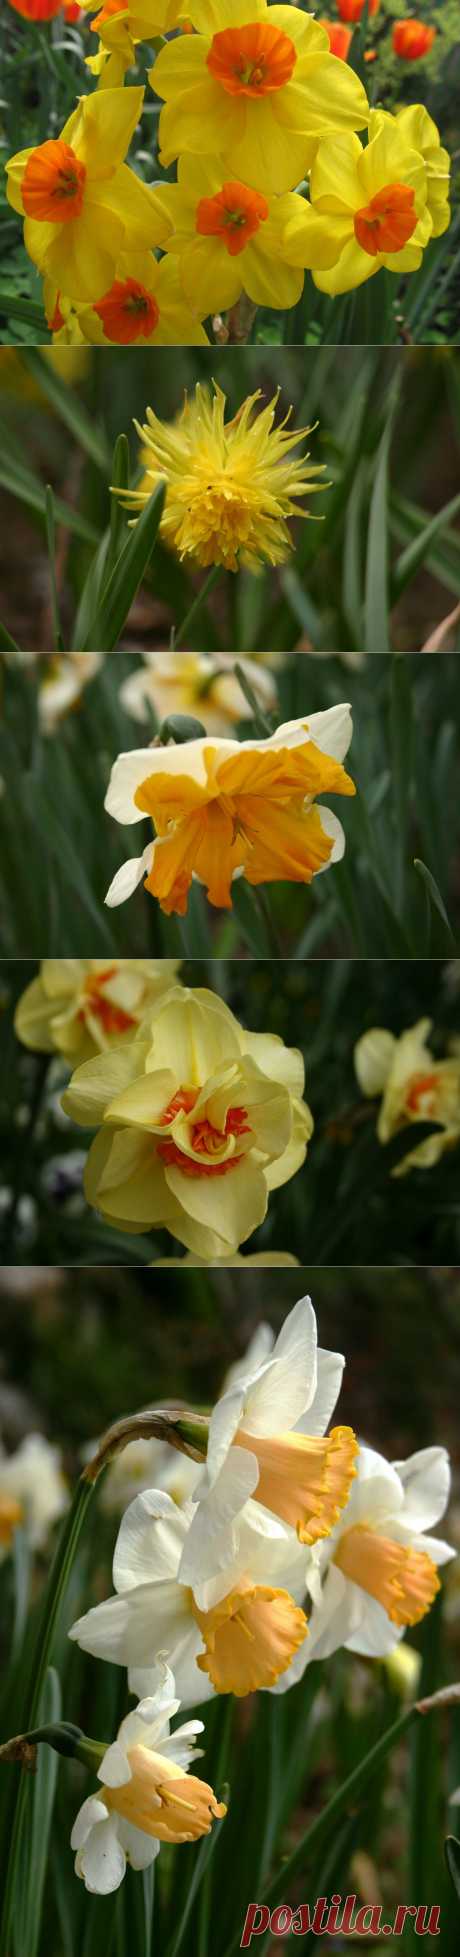 5 секретов цветка нарцисса.
Одним из традиционных цветков, который дарят женщинам в День 8 марта, является цветок нарцисса, у которого, оказывается, есть свои секреты.